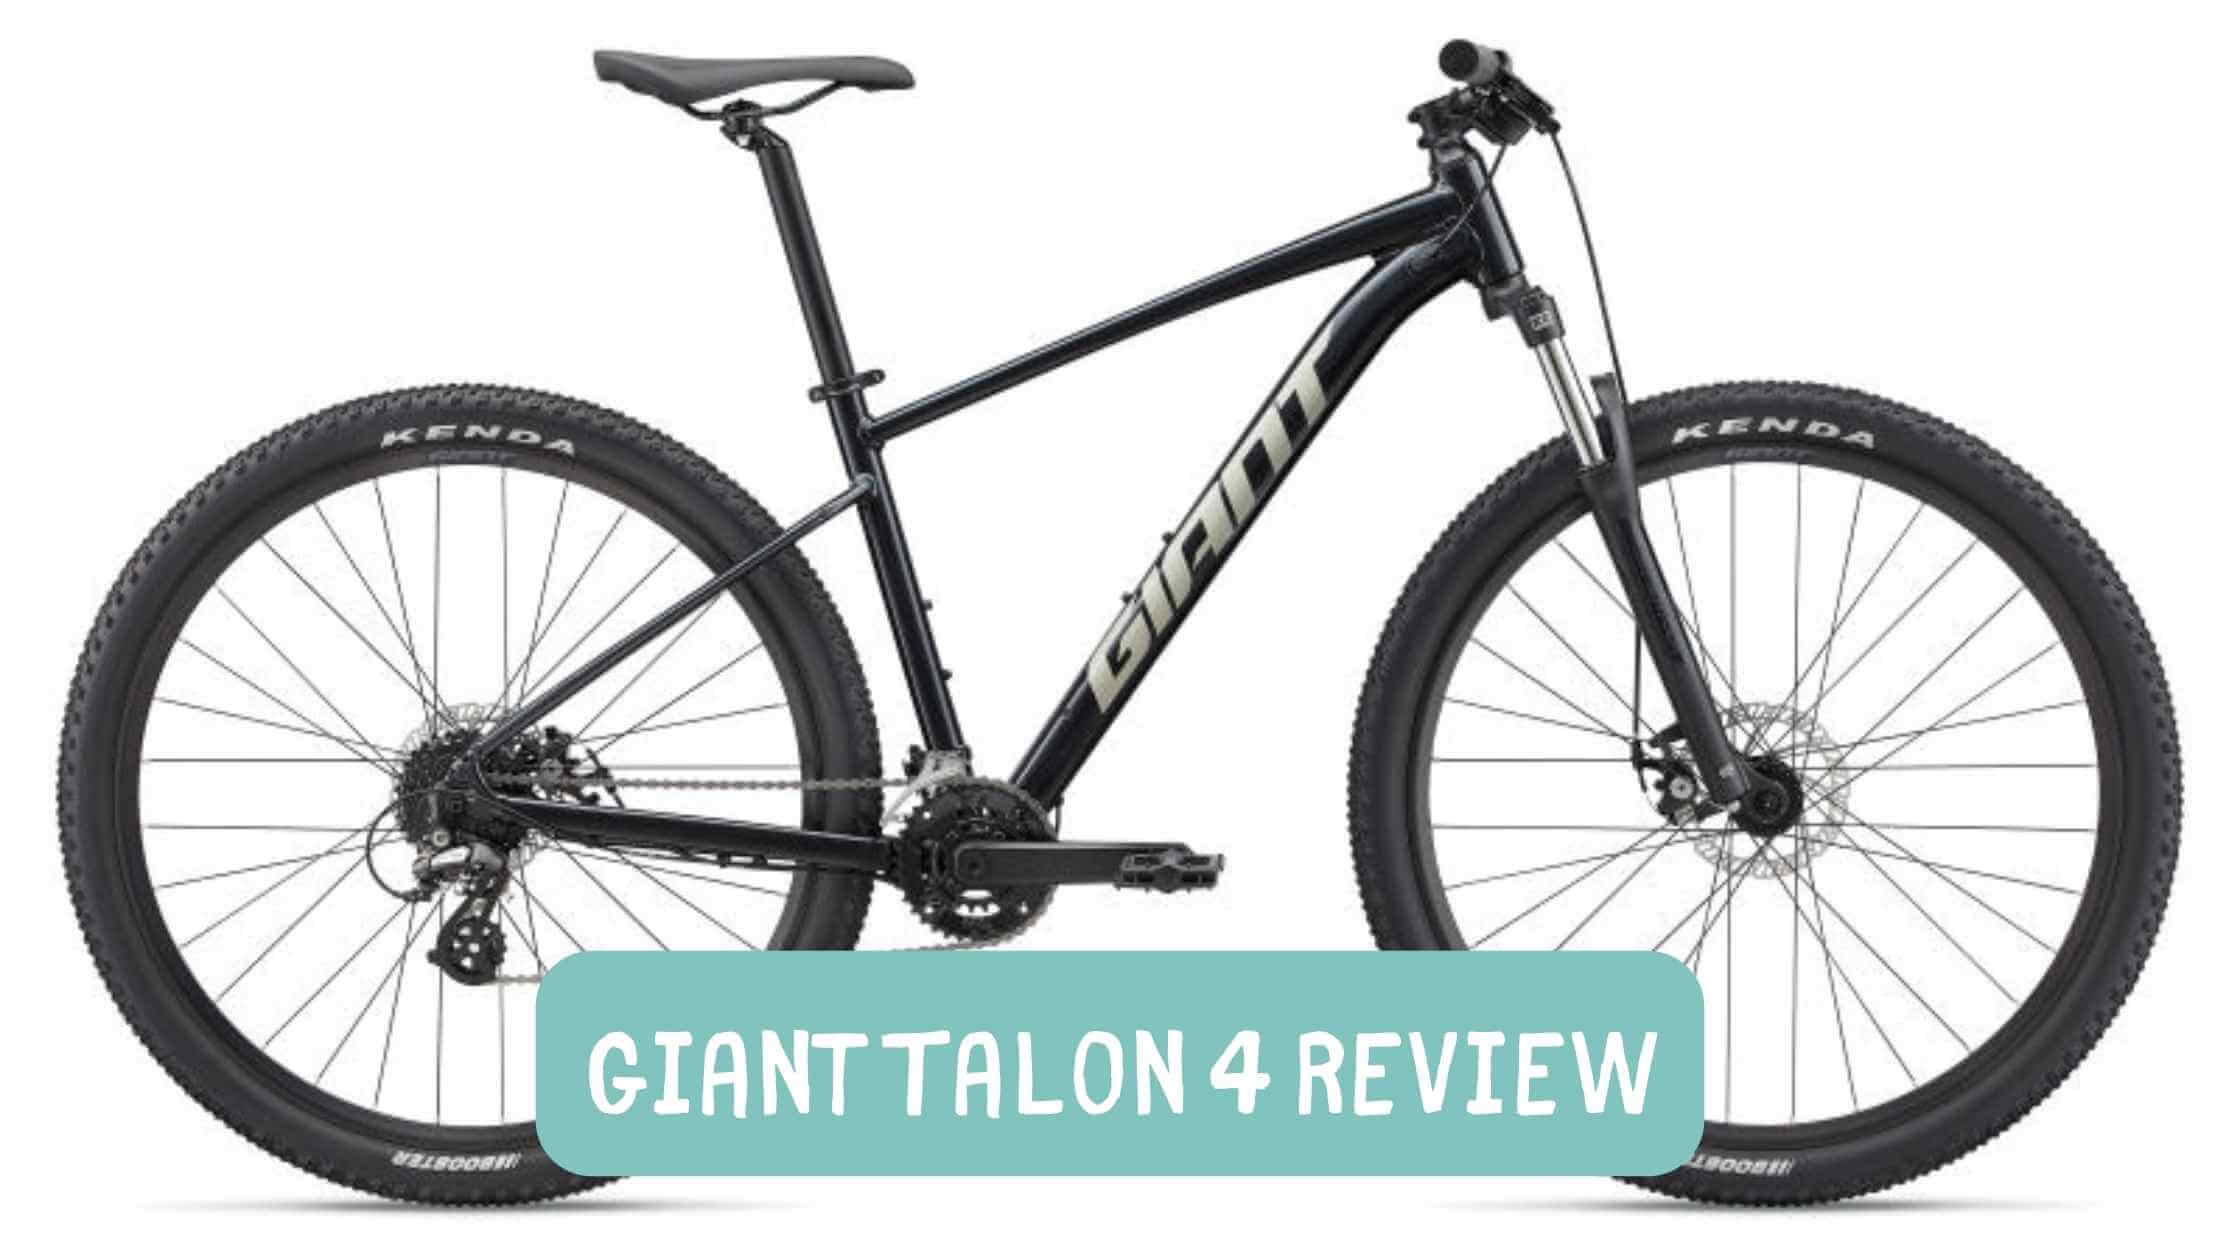 Giant Talon 4 Review